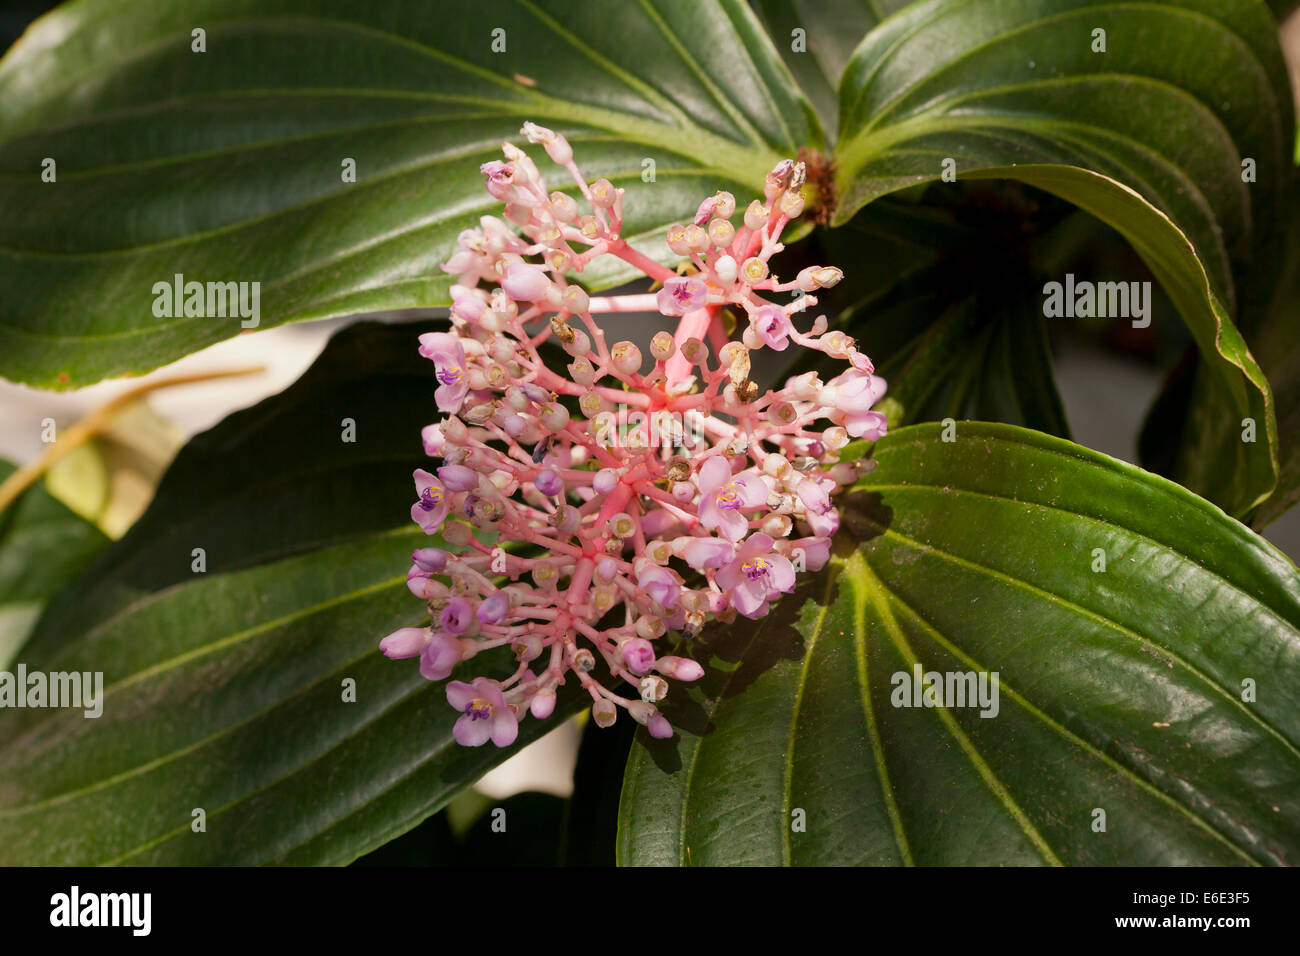 Melastome flowers (Medinilla myriantha) Stock Photo